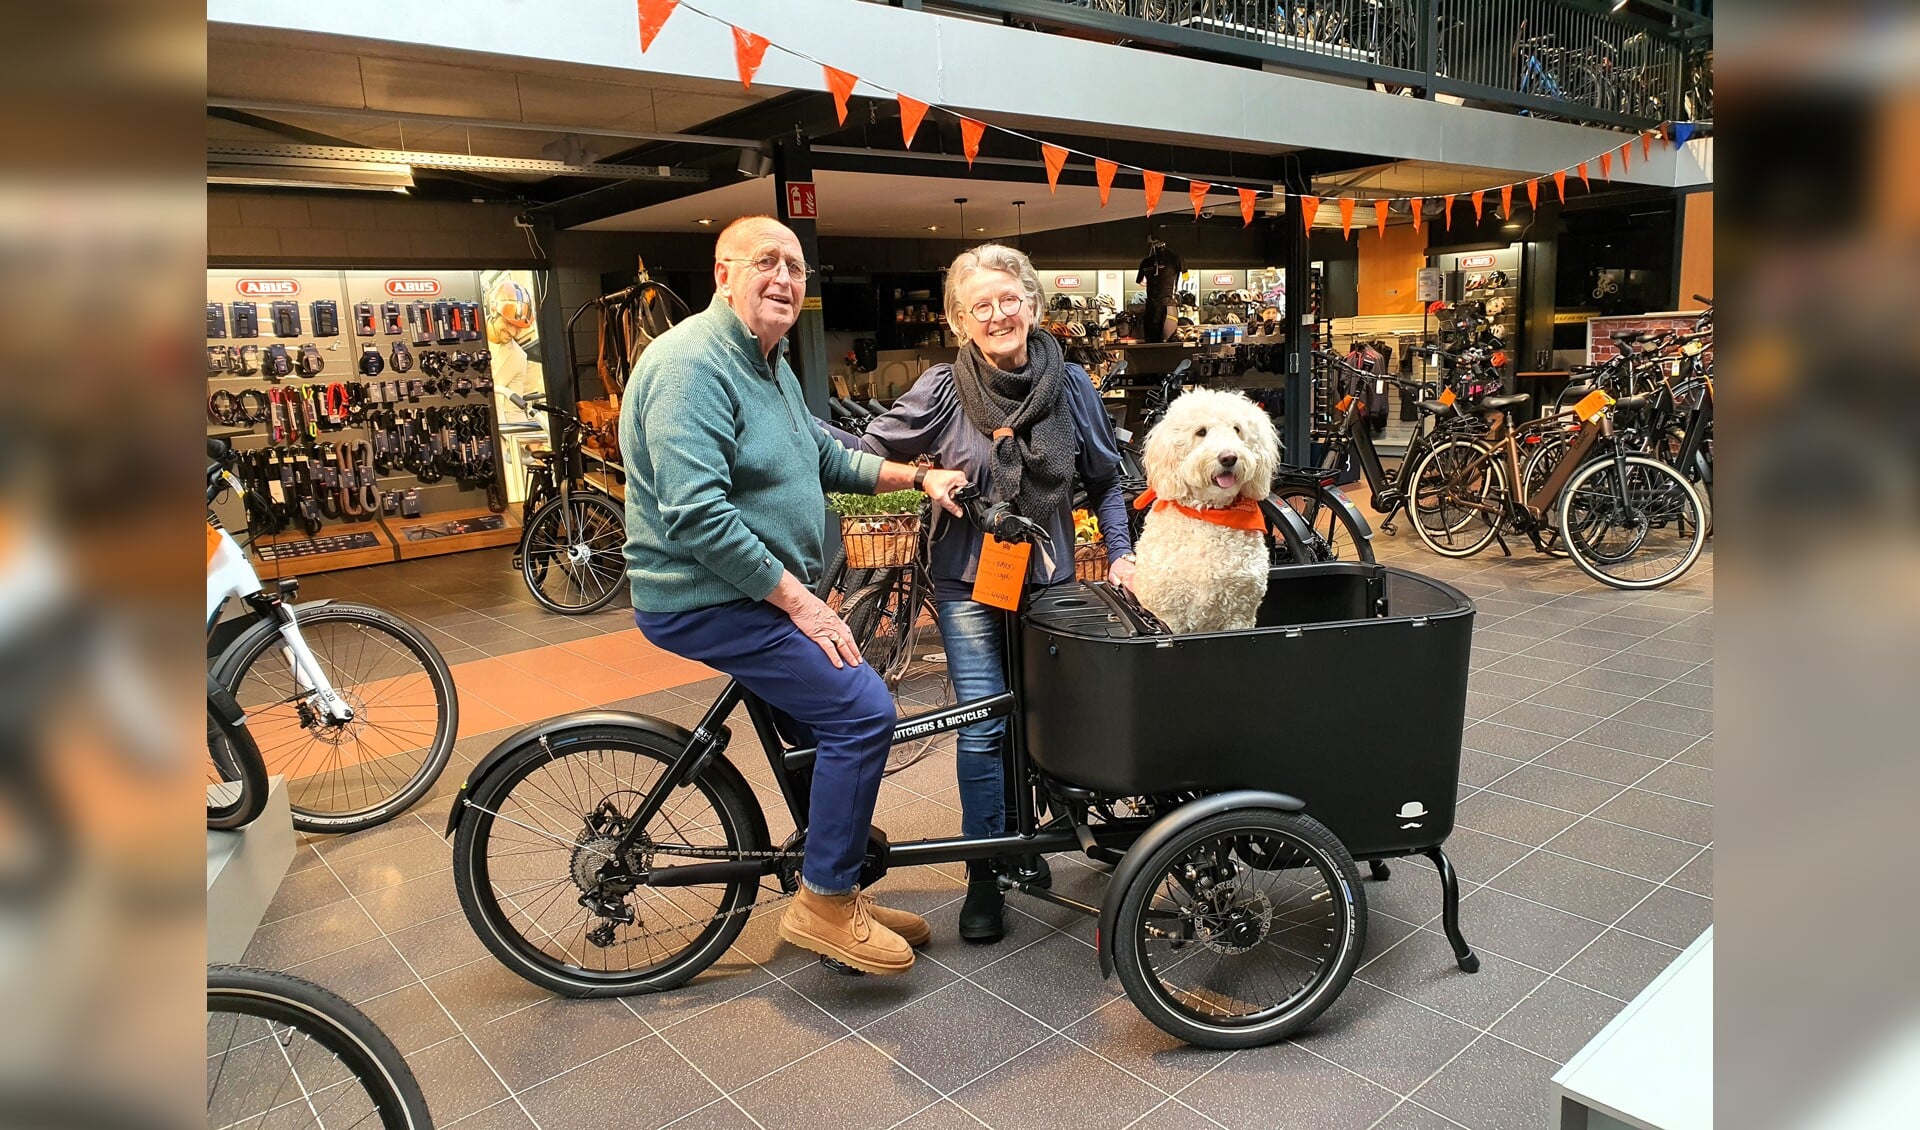 Berend en Willy Veenendaal, met hond Bess in de bakfiets.